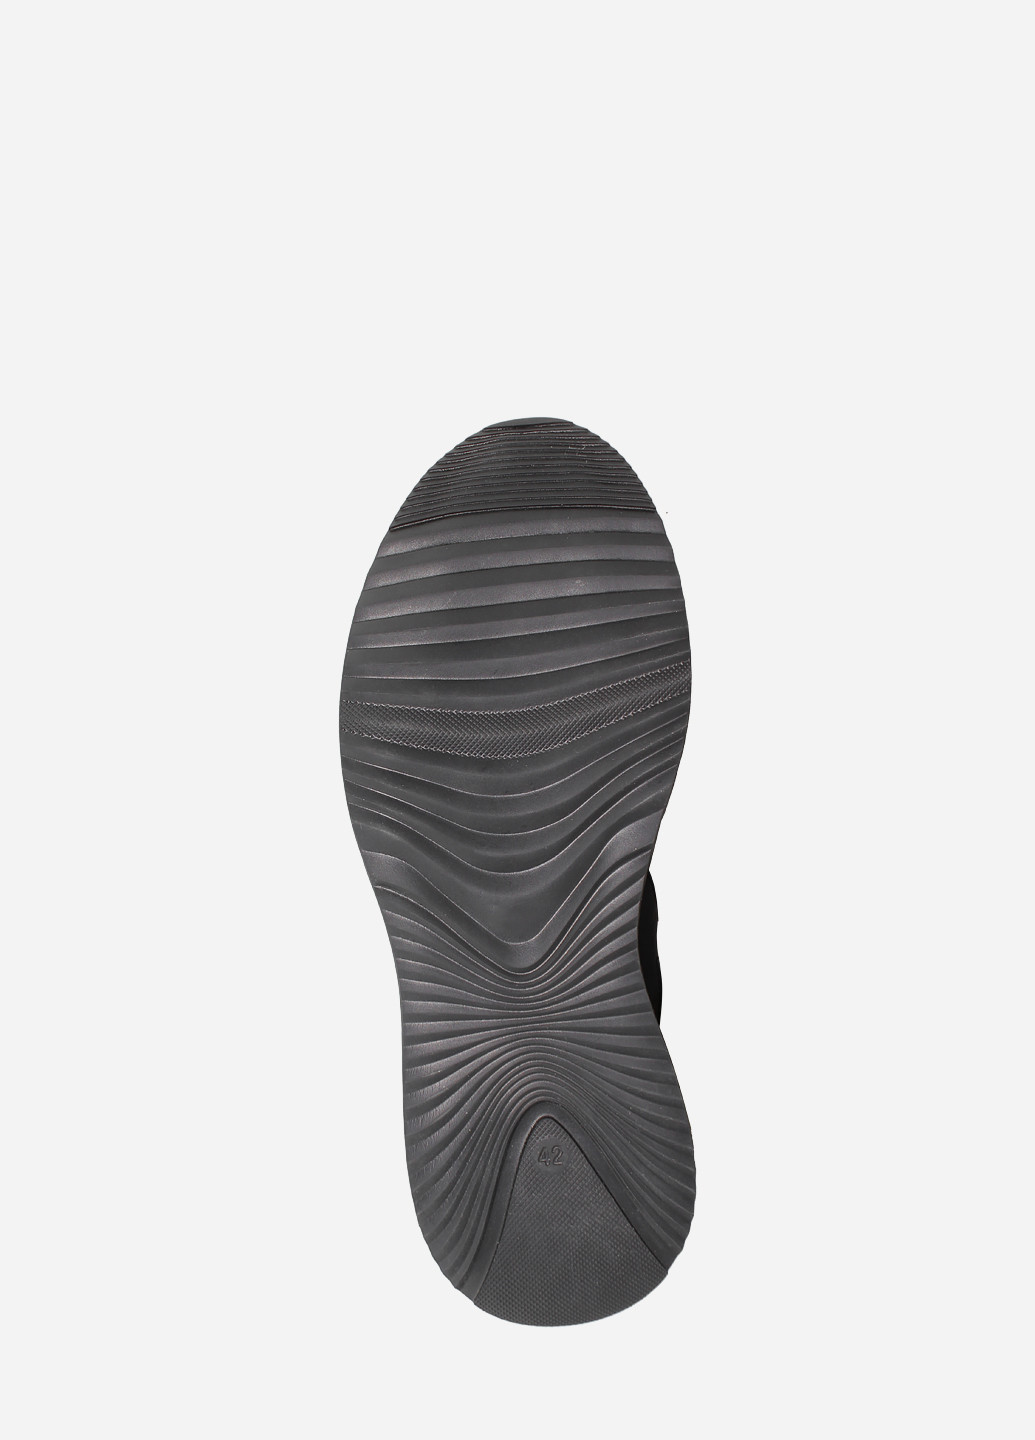 Черные демисезонные кроссовки 22-003 черный Nivas